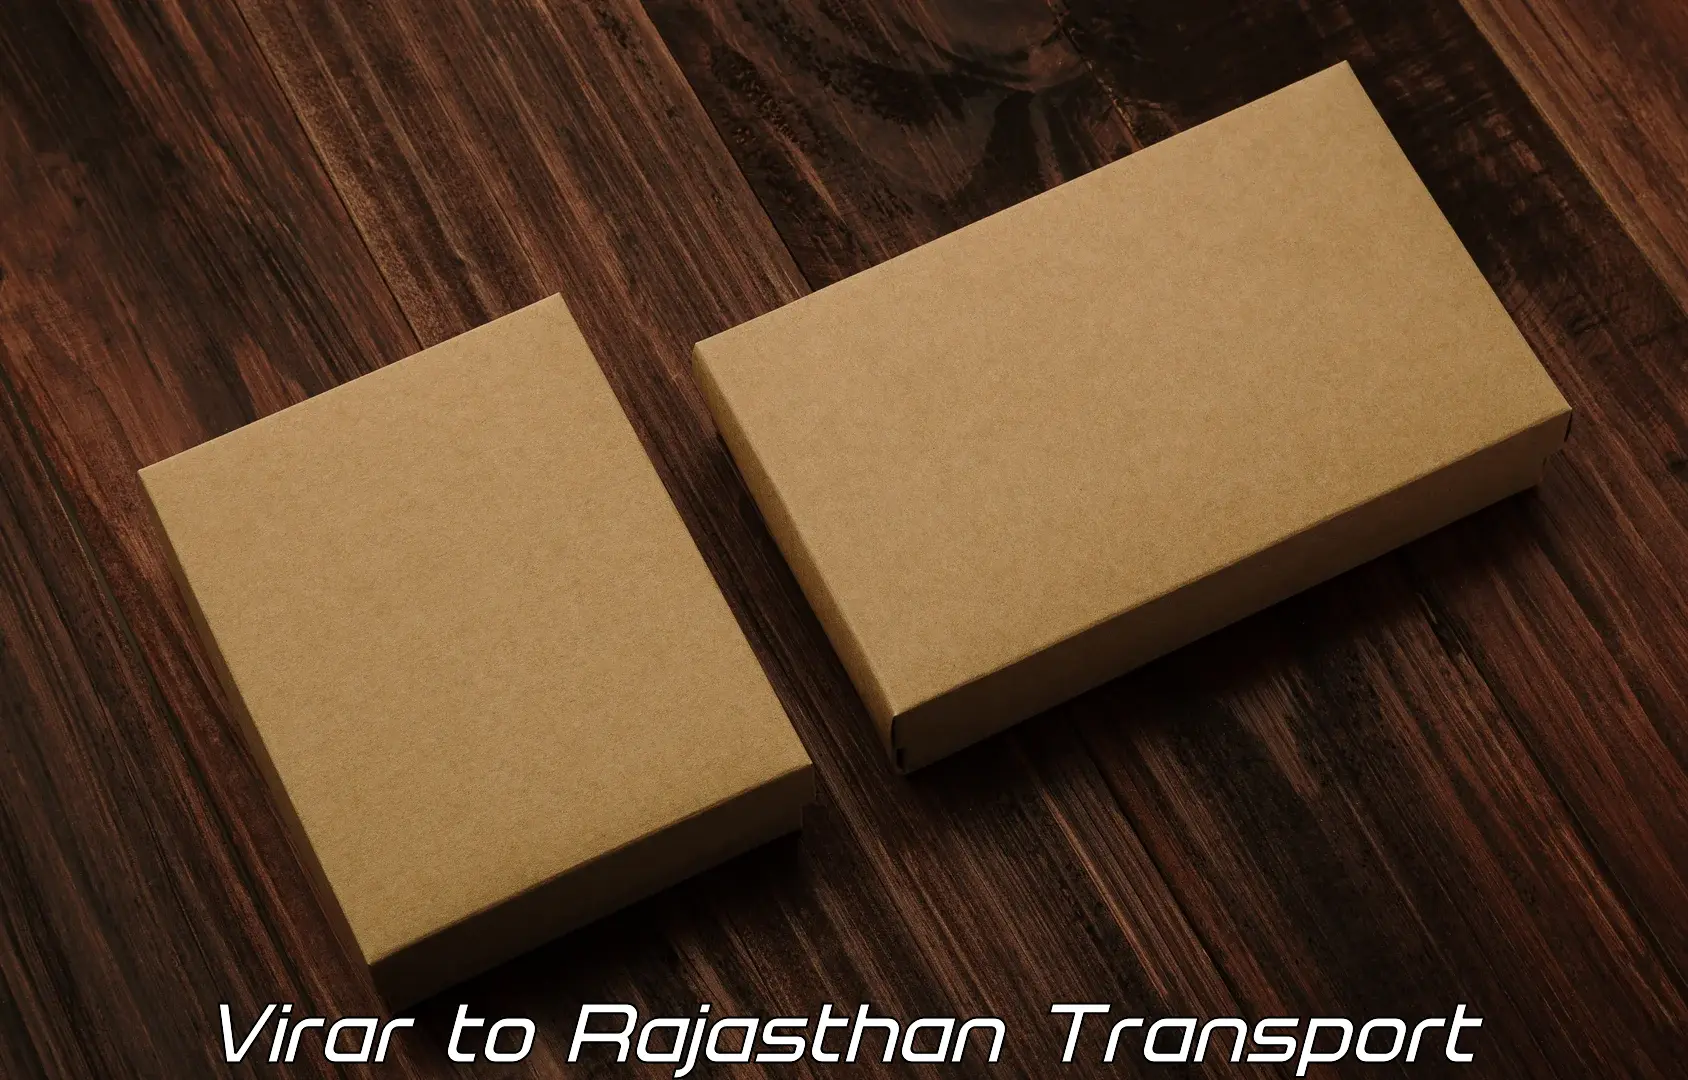 Online transport service Virar to Pratapgarh Rajasthan